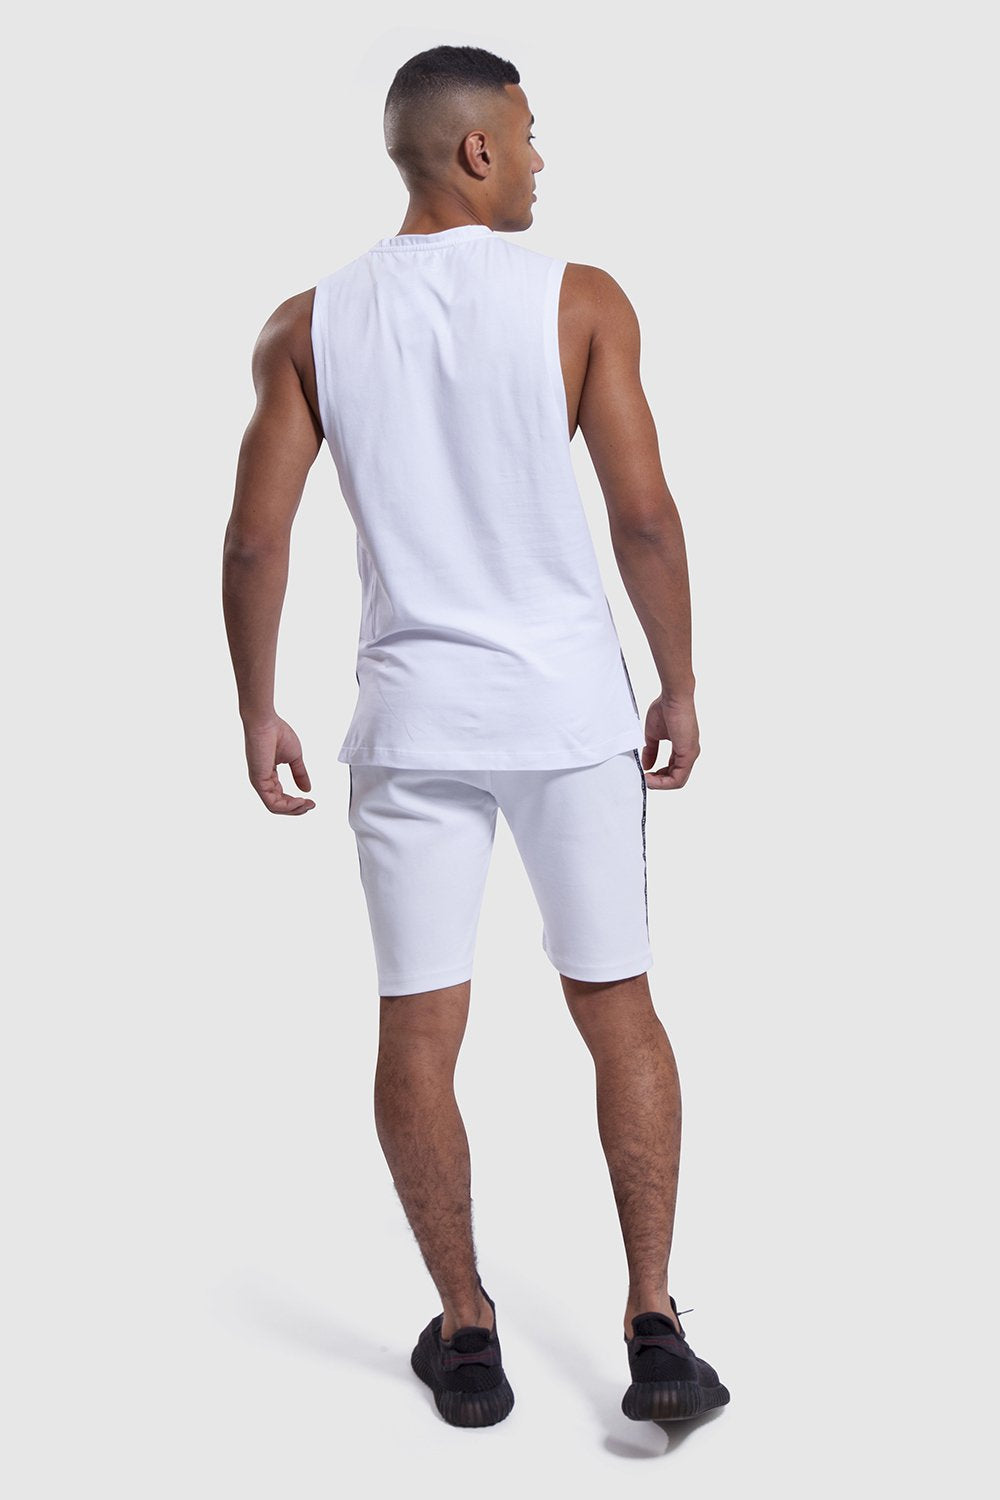 Vest and gym shorts set for men